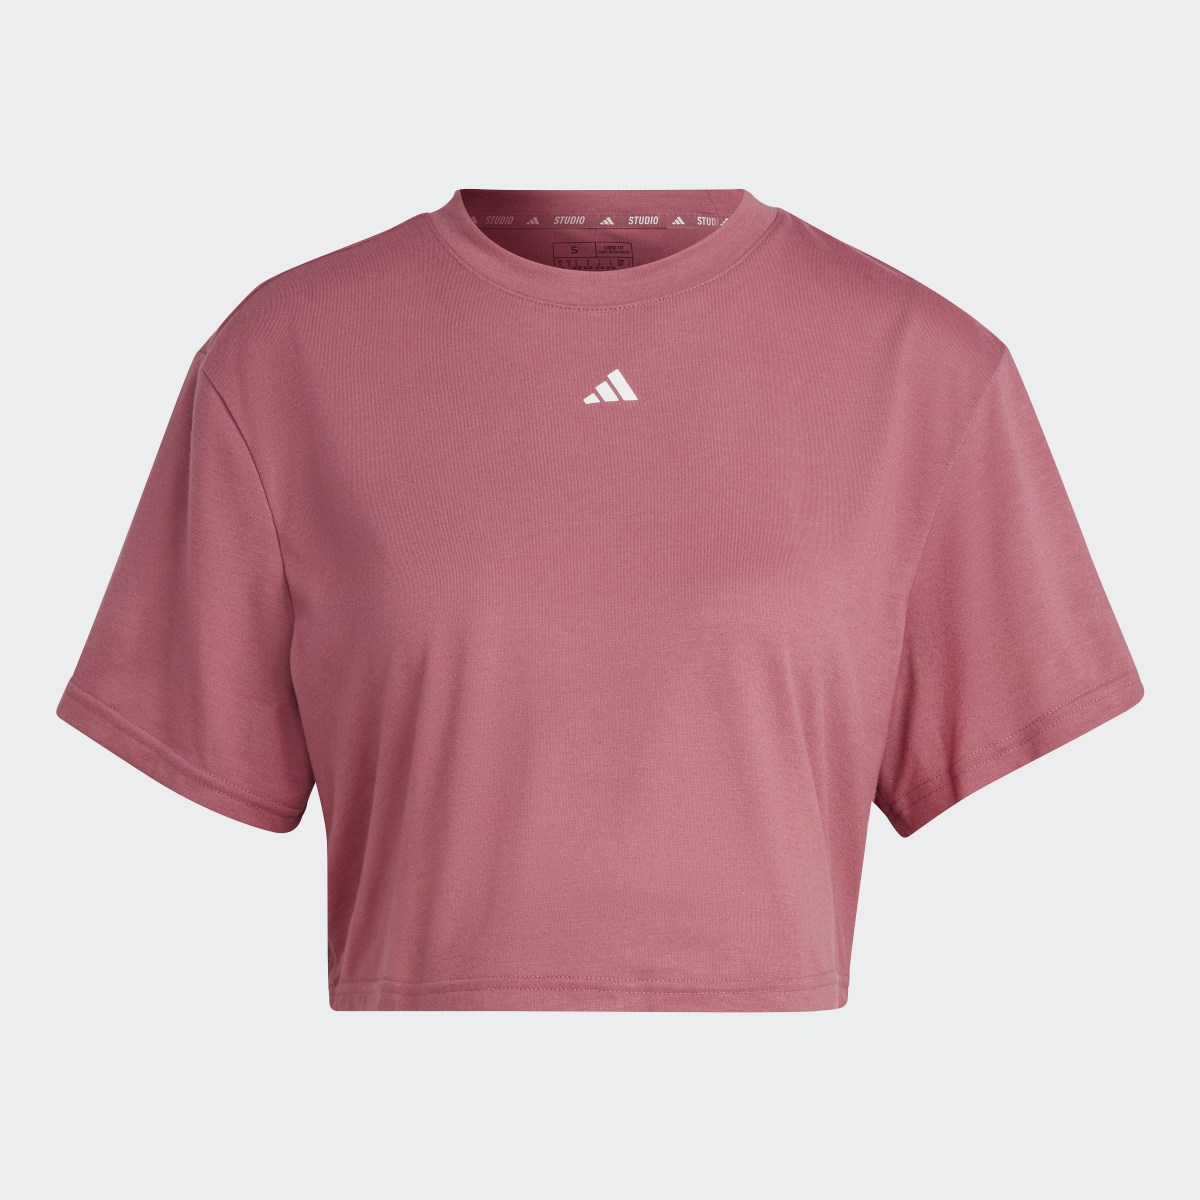 Adidas Studio T-Shirt. 5